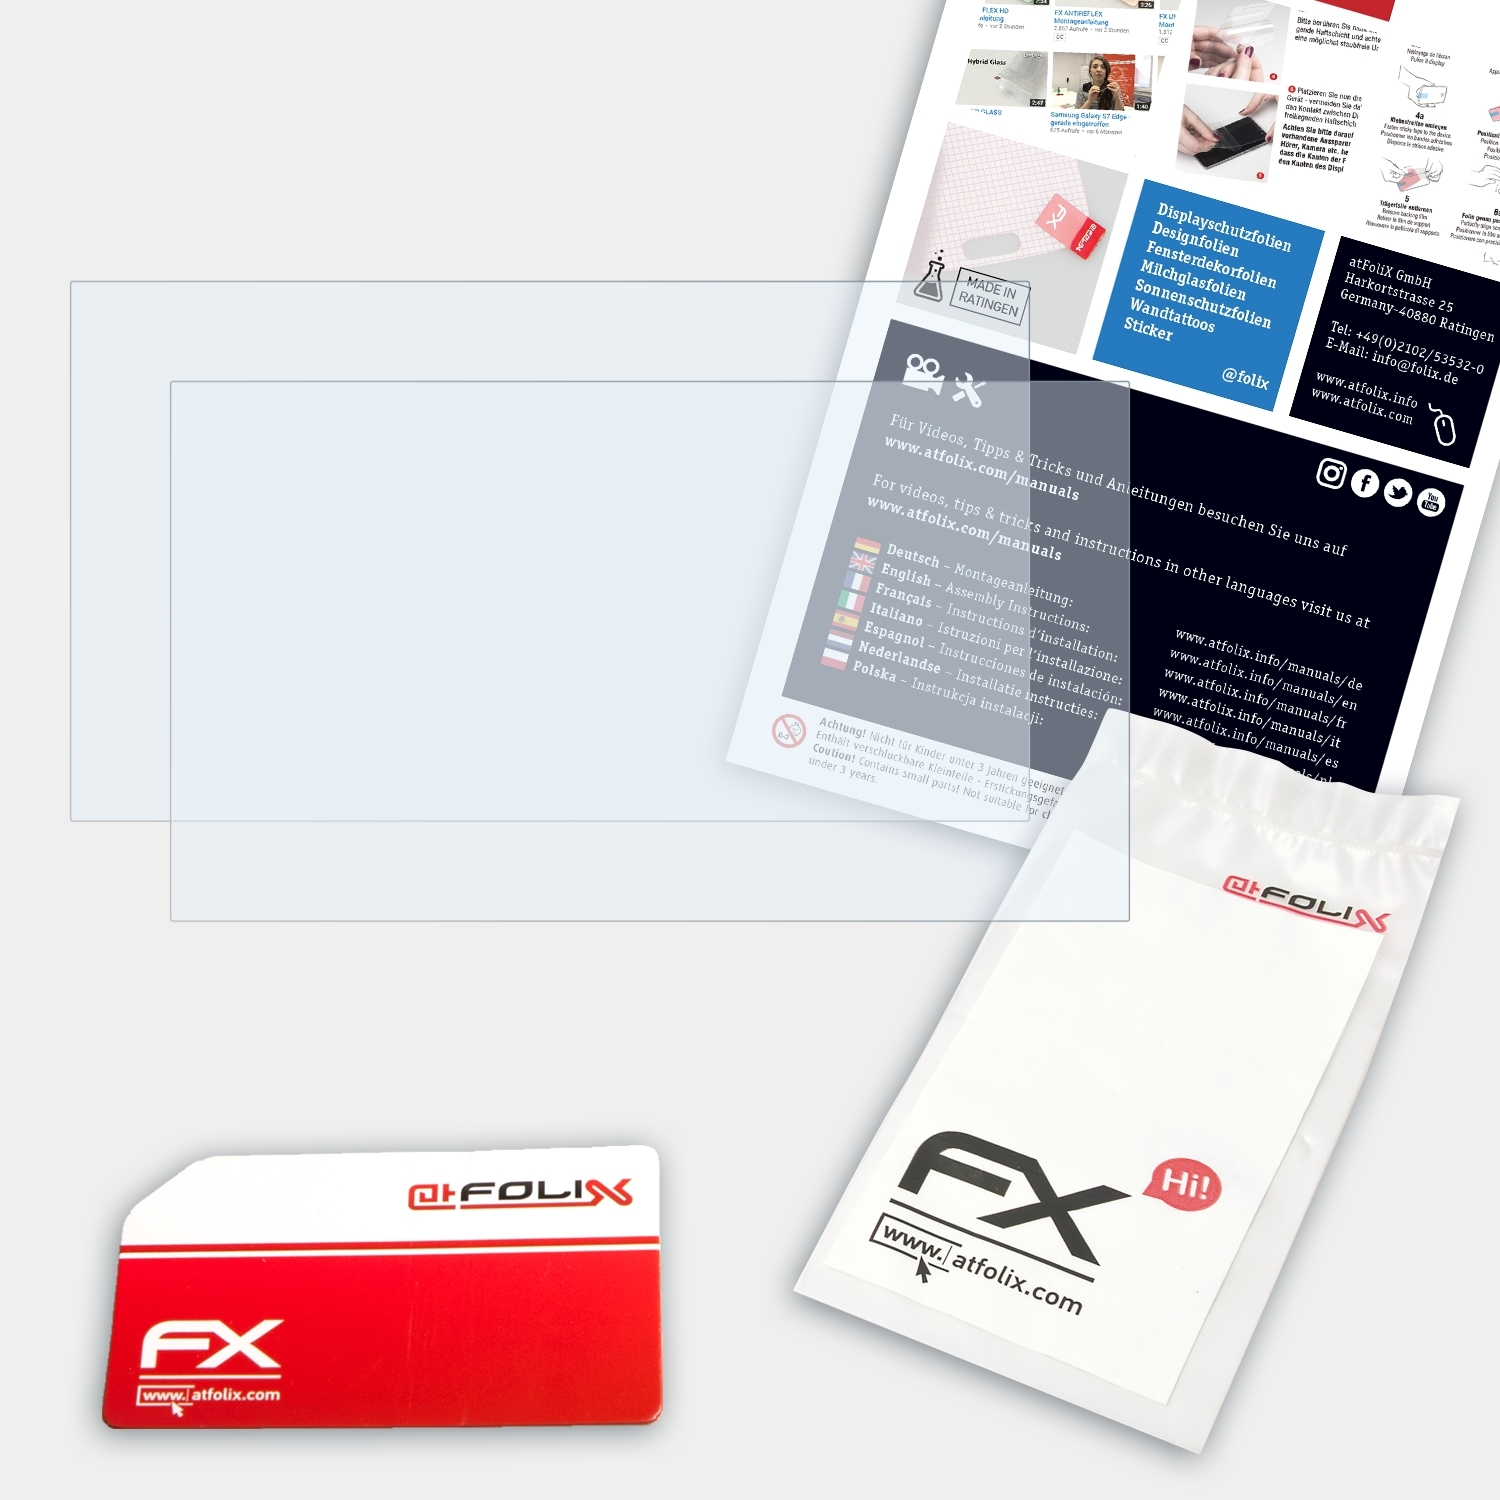 ATFOLIX 2x Displayschutz(für 120S IdeaPad (11 inch)) Lenovo FX-Clear